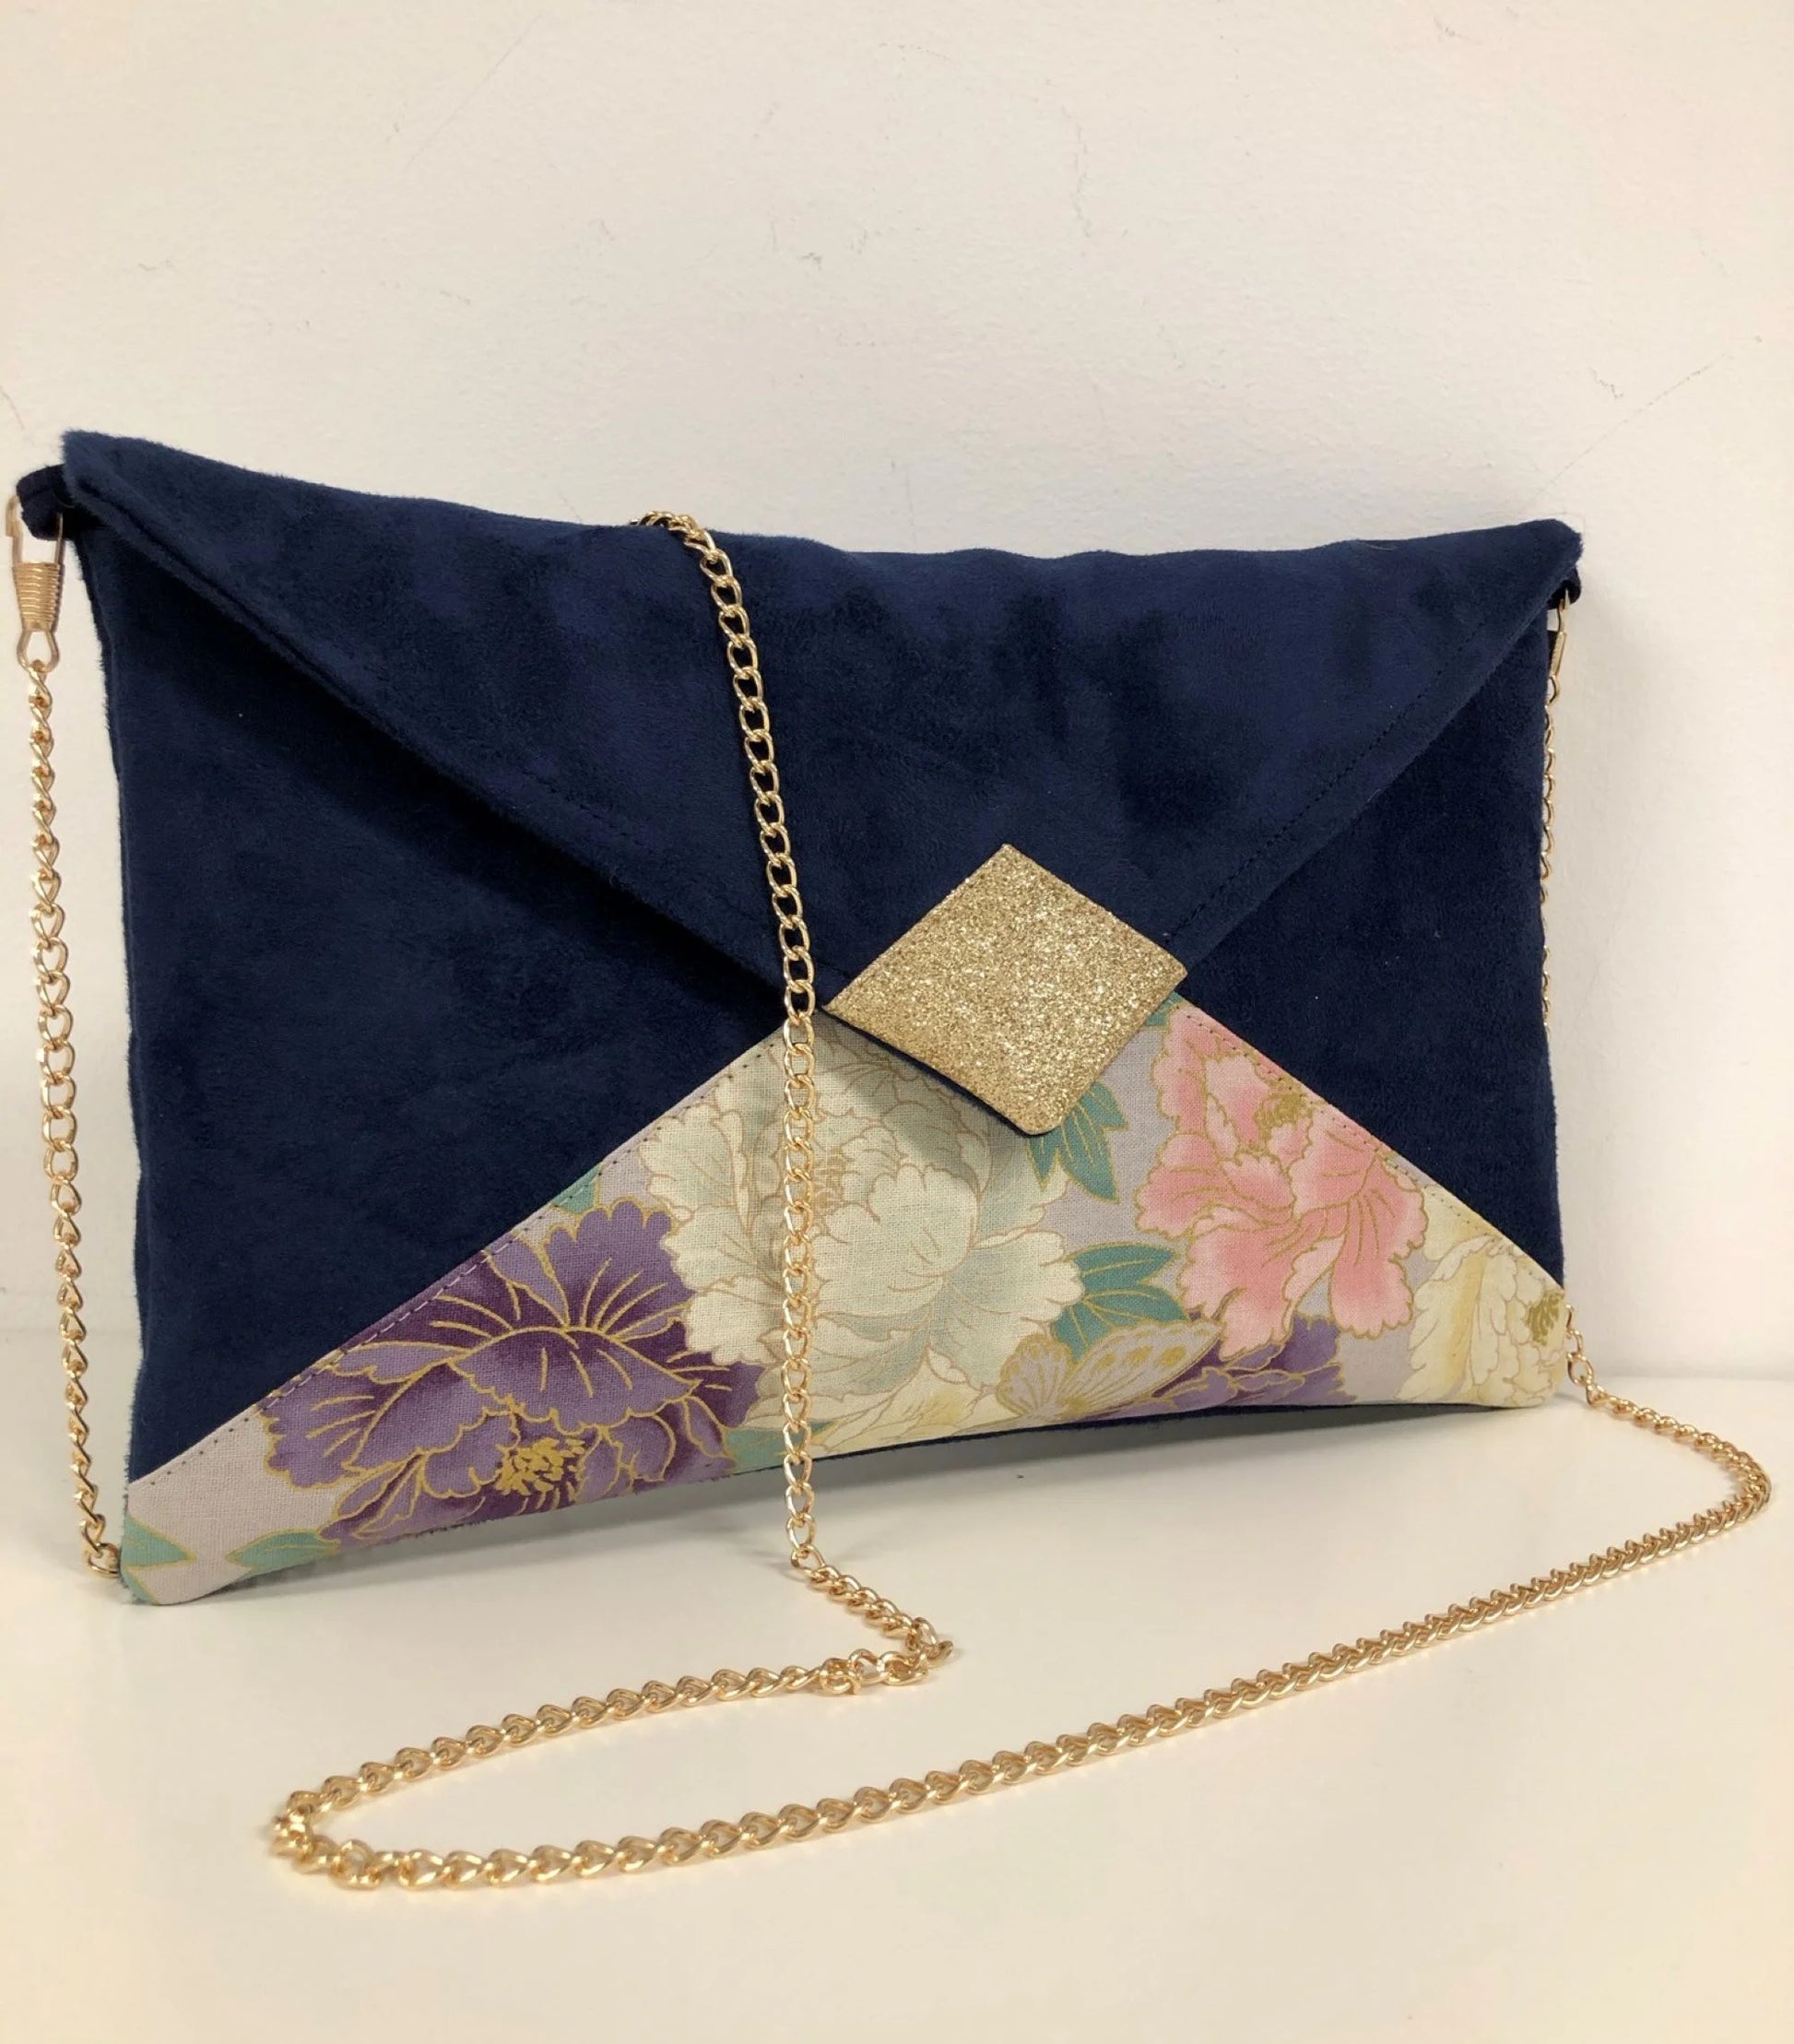 Le sac pochette Isa bleu marine en tissu japonais à fleurs mauve et rose et paillettes dorées.